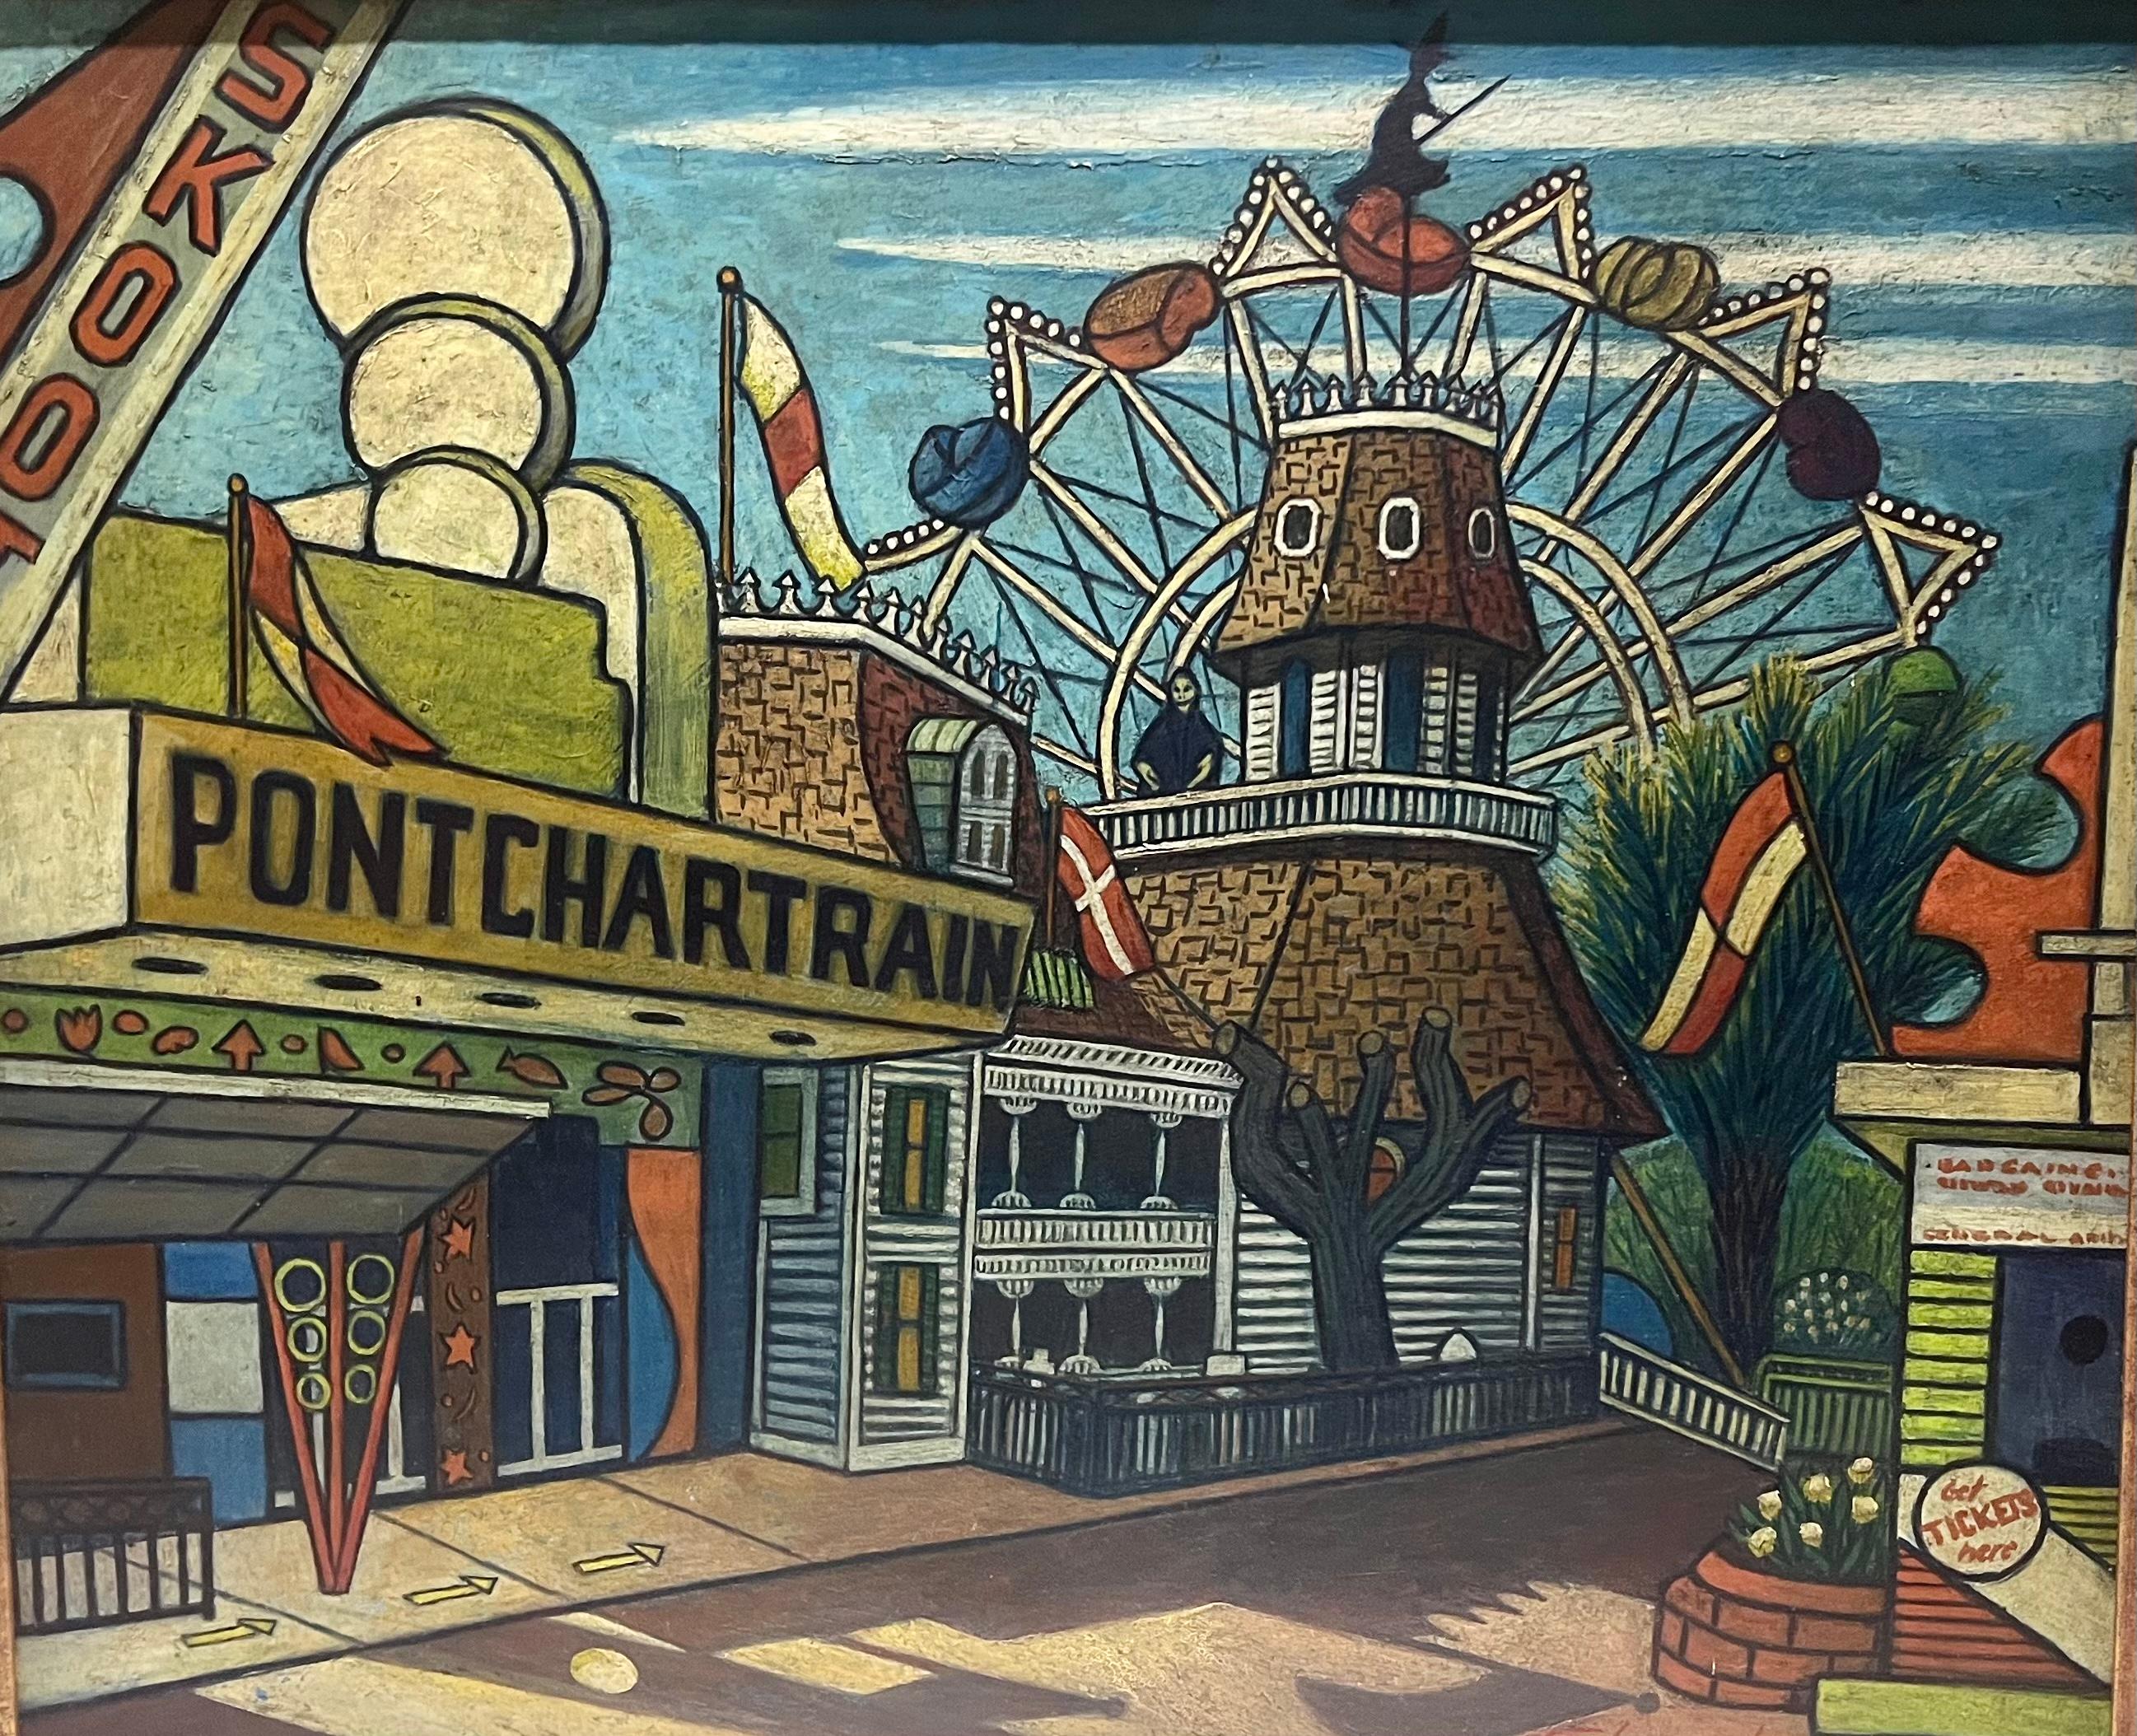 Laurence Edwardson Landscape Painting - PONCHARTRAIN Louisiana New Orleans Beach AMUSEMENT PARK Ferris Wheel CARNIVAL